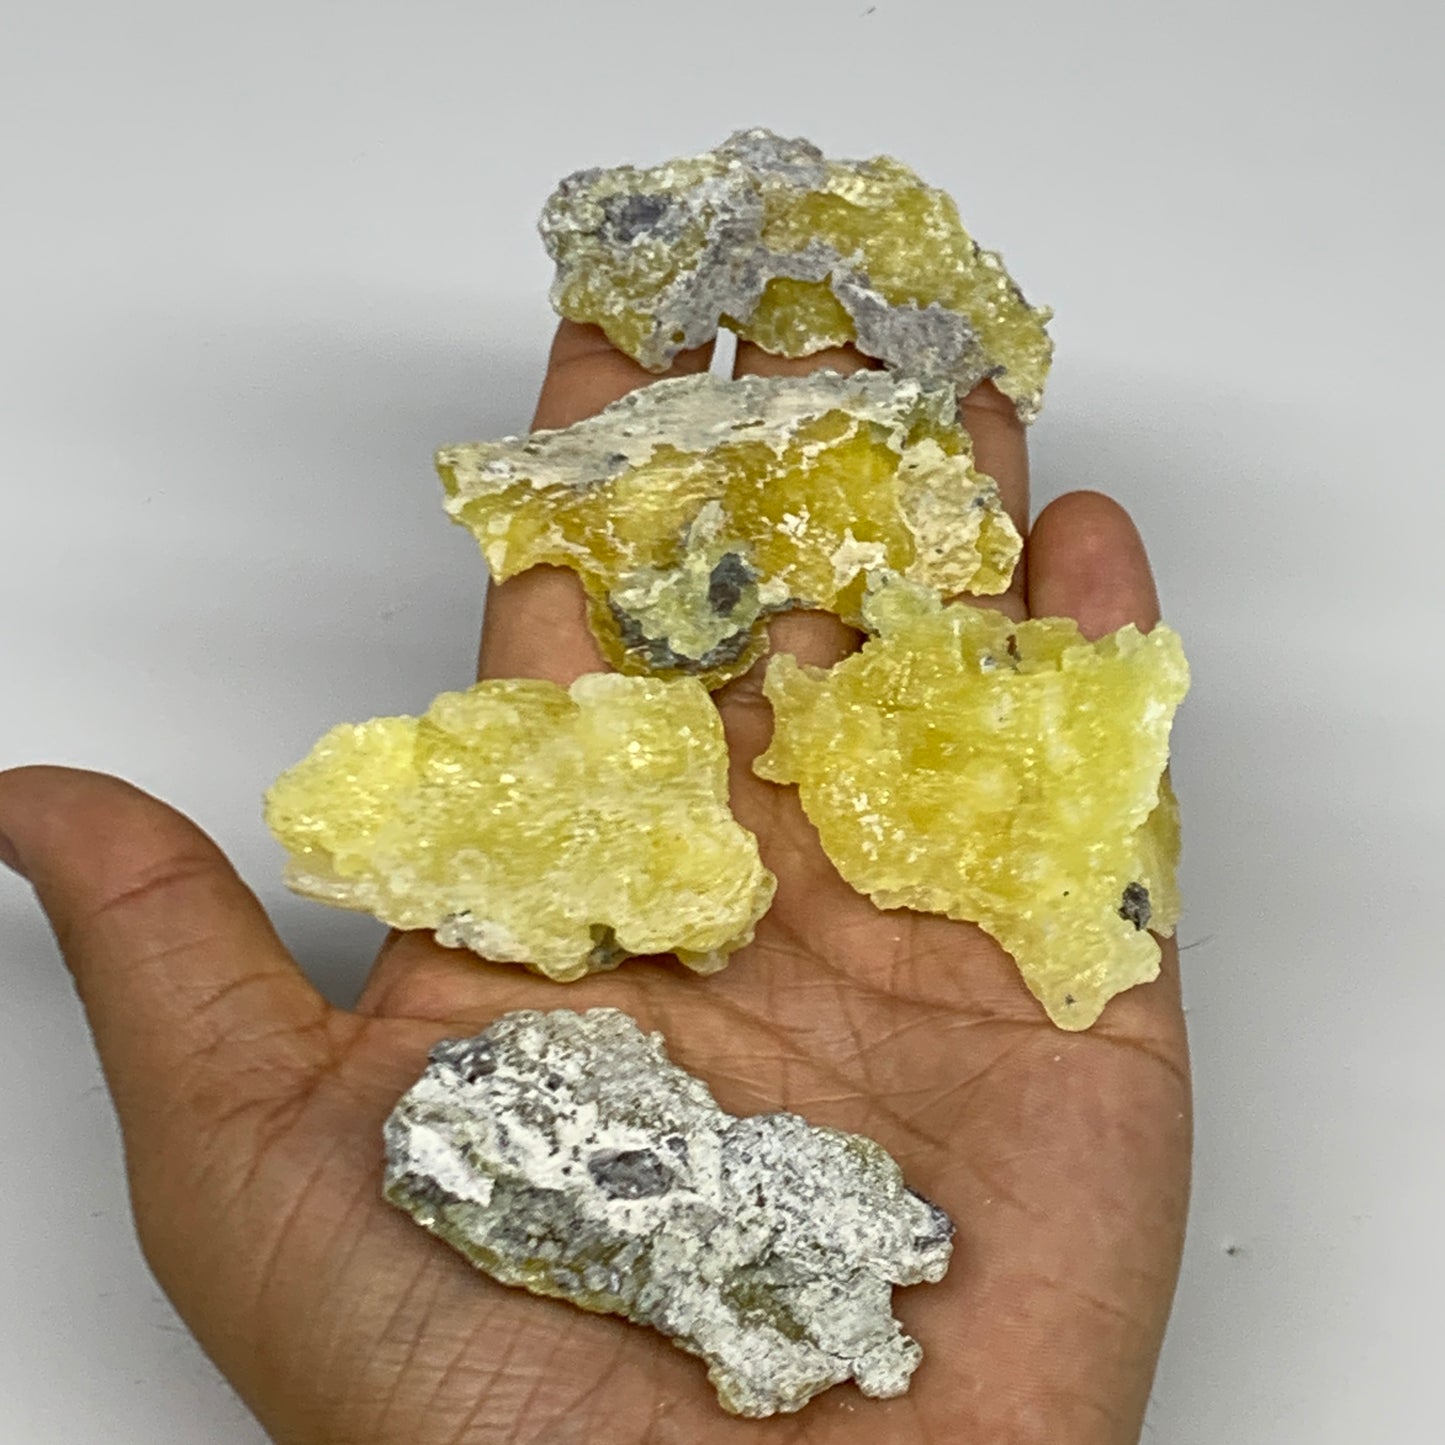 0.61 lbs, 1.9"-2.5", 16pcs, Brucite Crystal Minerals Specimens @Pakistan, B30150